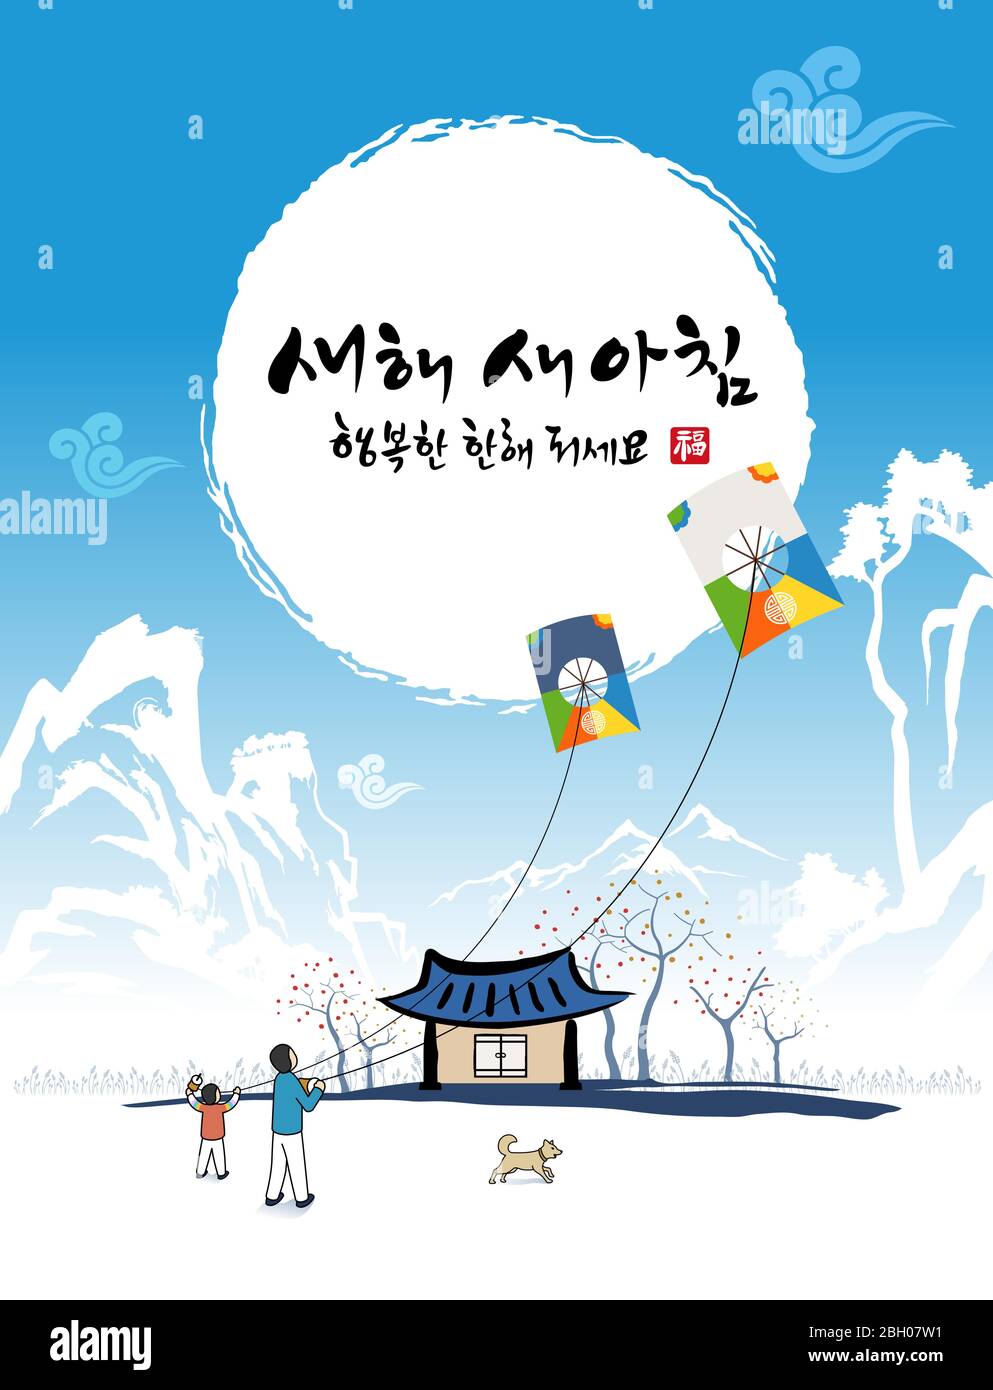 Frohes neues Jahr, Koreanisch Text Übersetzung: Frohes neues Jahr, Kalligraphie und Koreanisch traditionelle Drachen fliegende Menschen und Hunde Stock Vektor